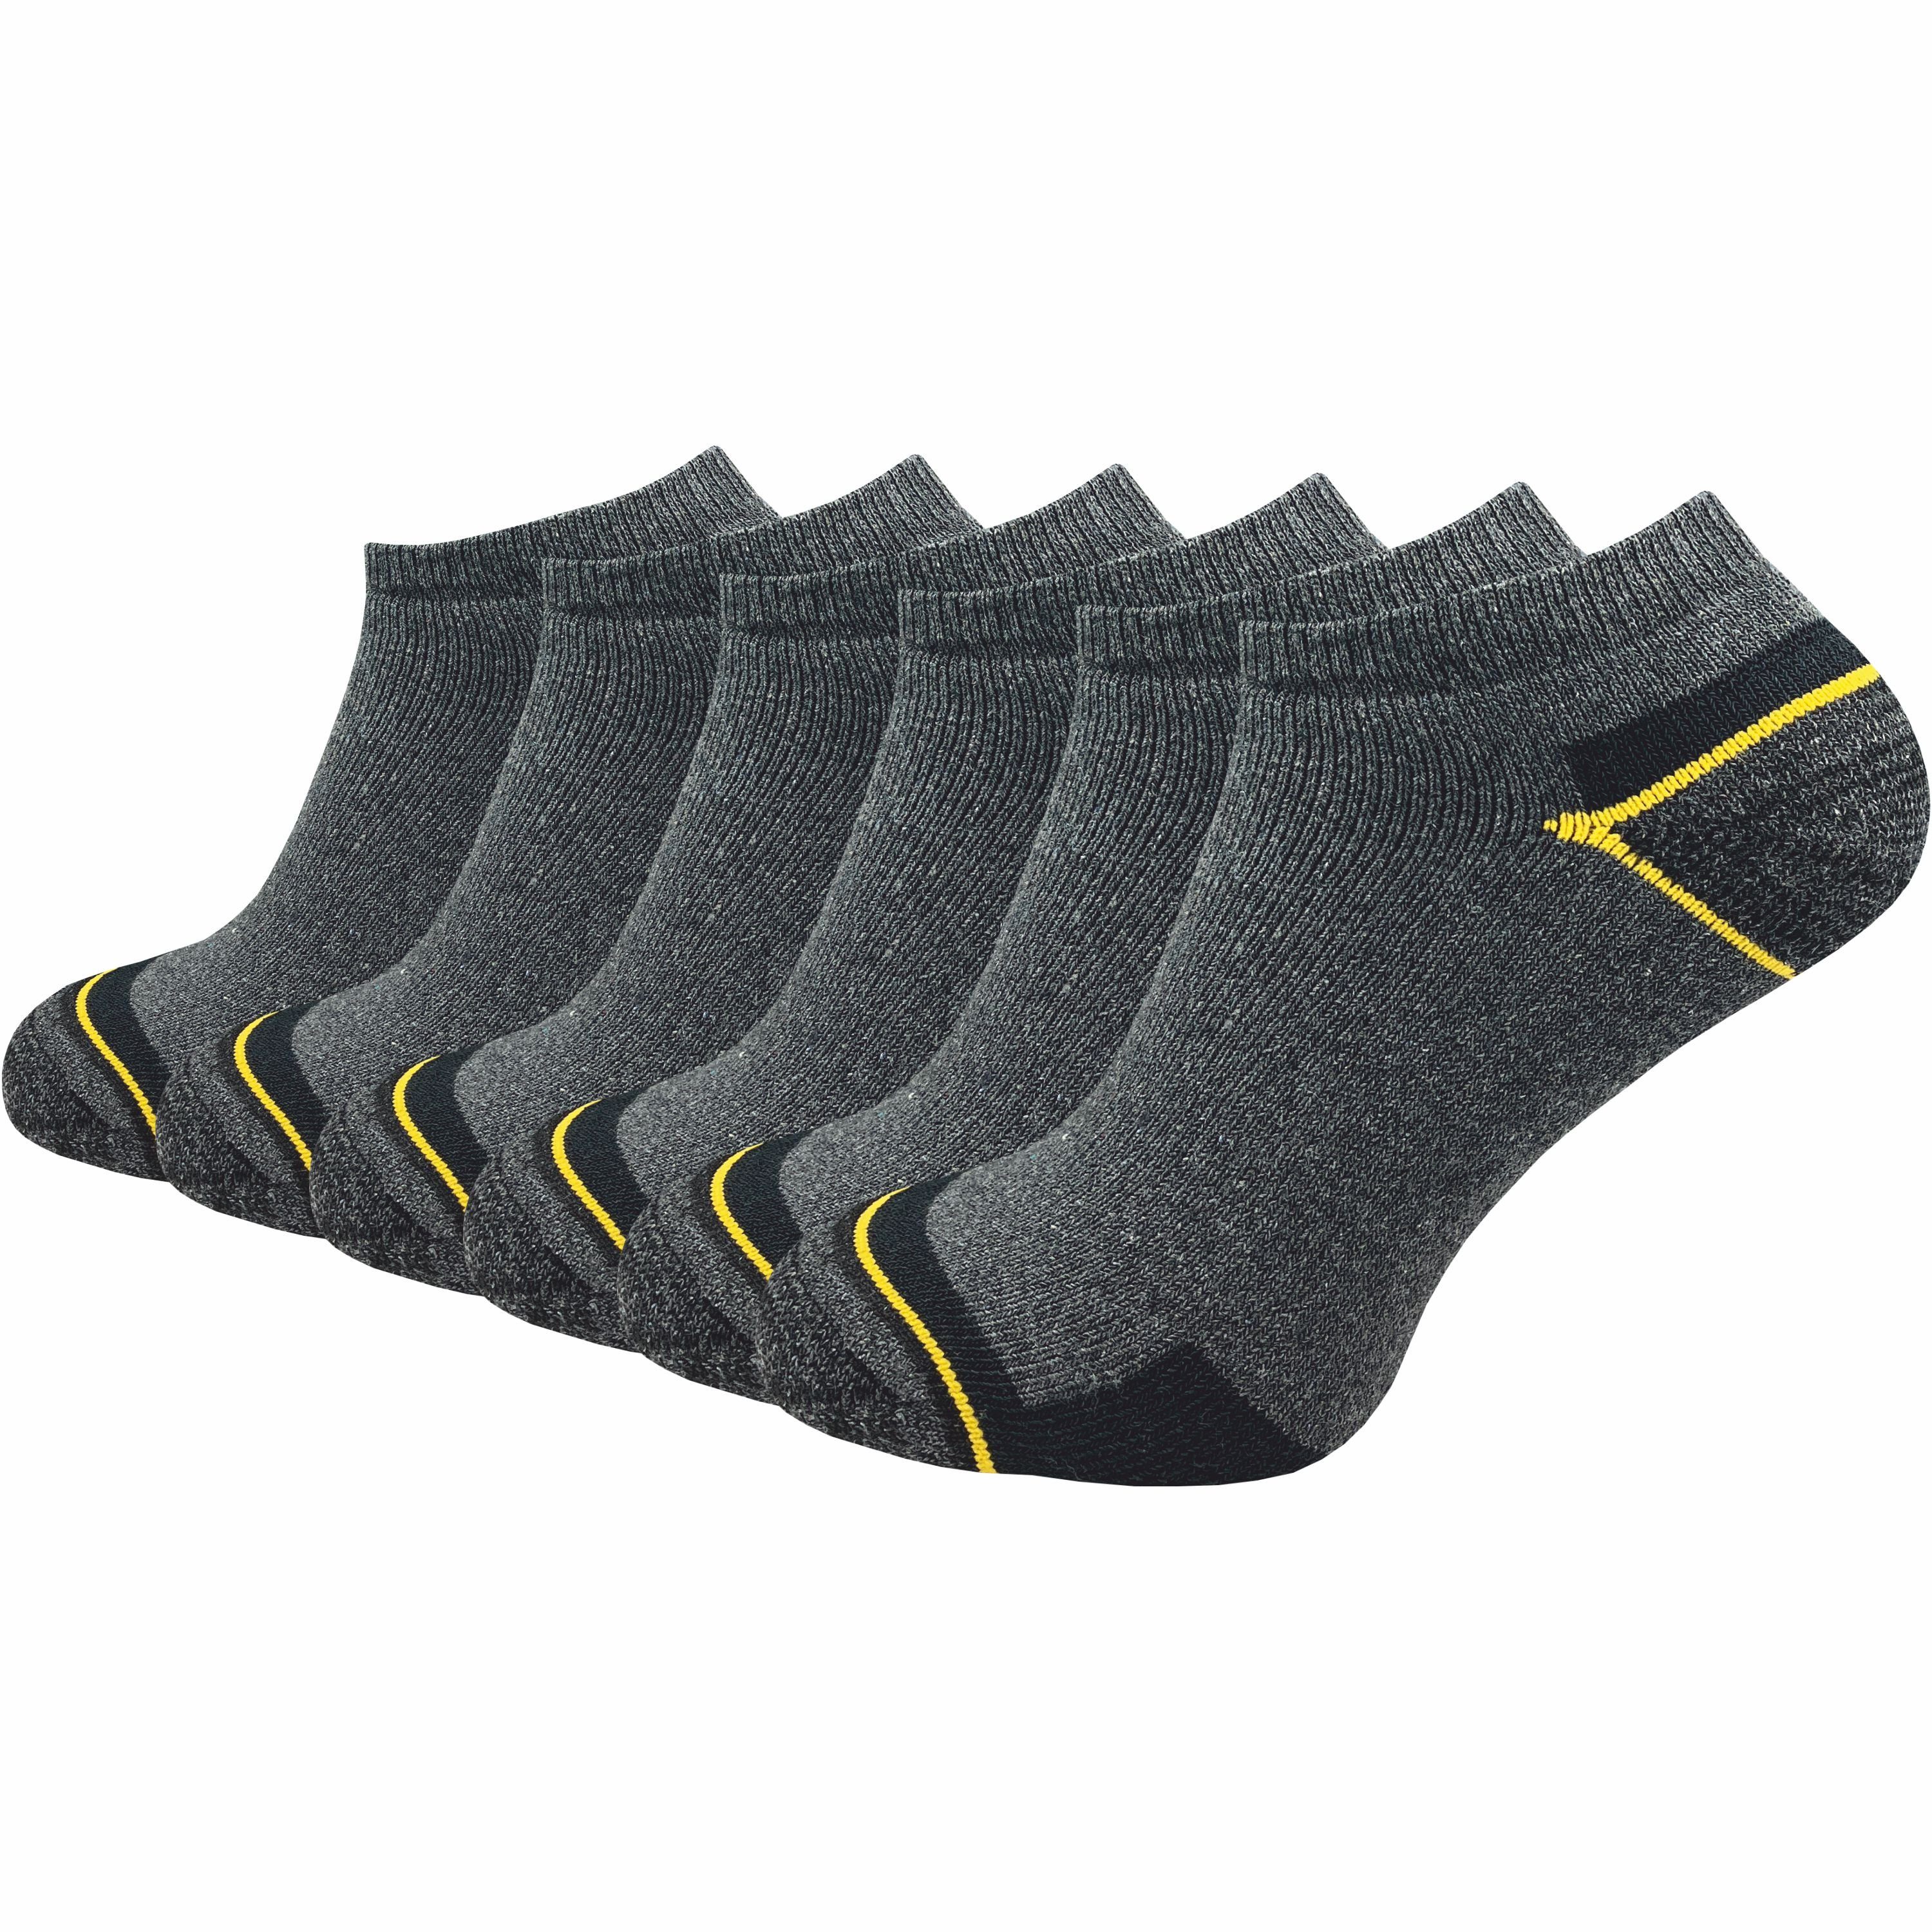 GAWILO Arbeitssocken - Sneaker - für Herren mit atmungsaktiver Baumwolle gegen Schweißfüße (6 Paar) Ideal für Sicherheitsschuhe oder Arbeitsschuhe - Arbeits Sneaker Grau